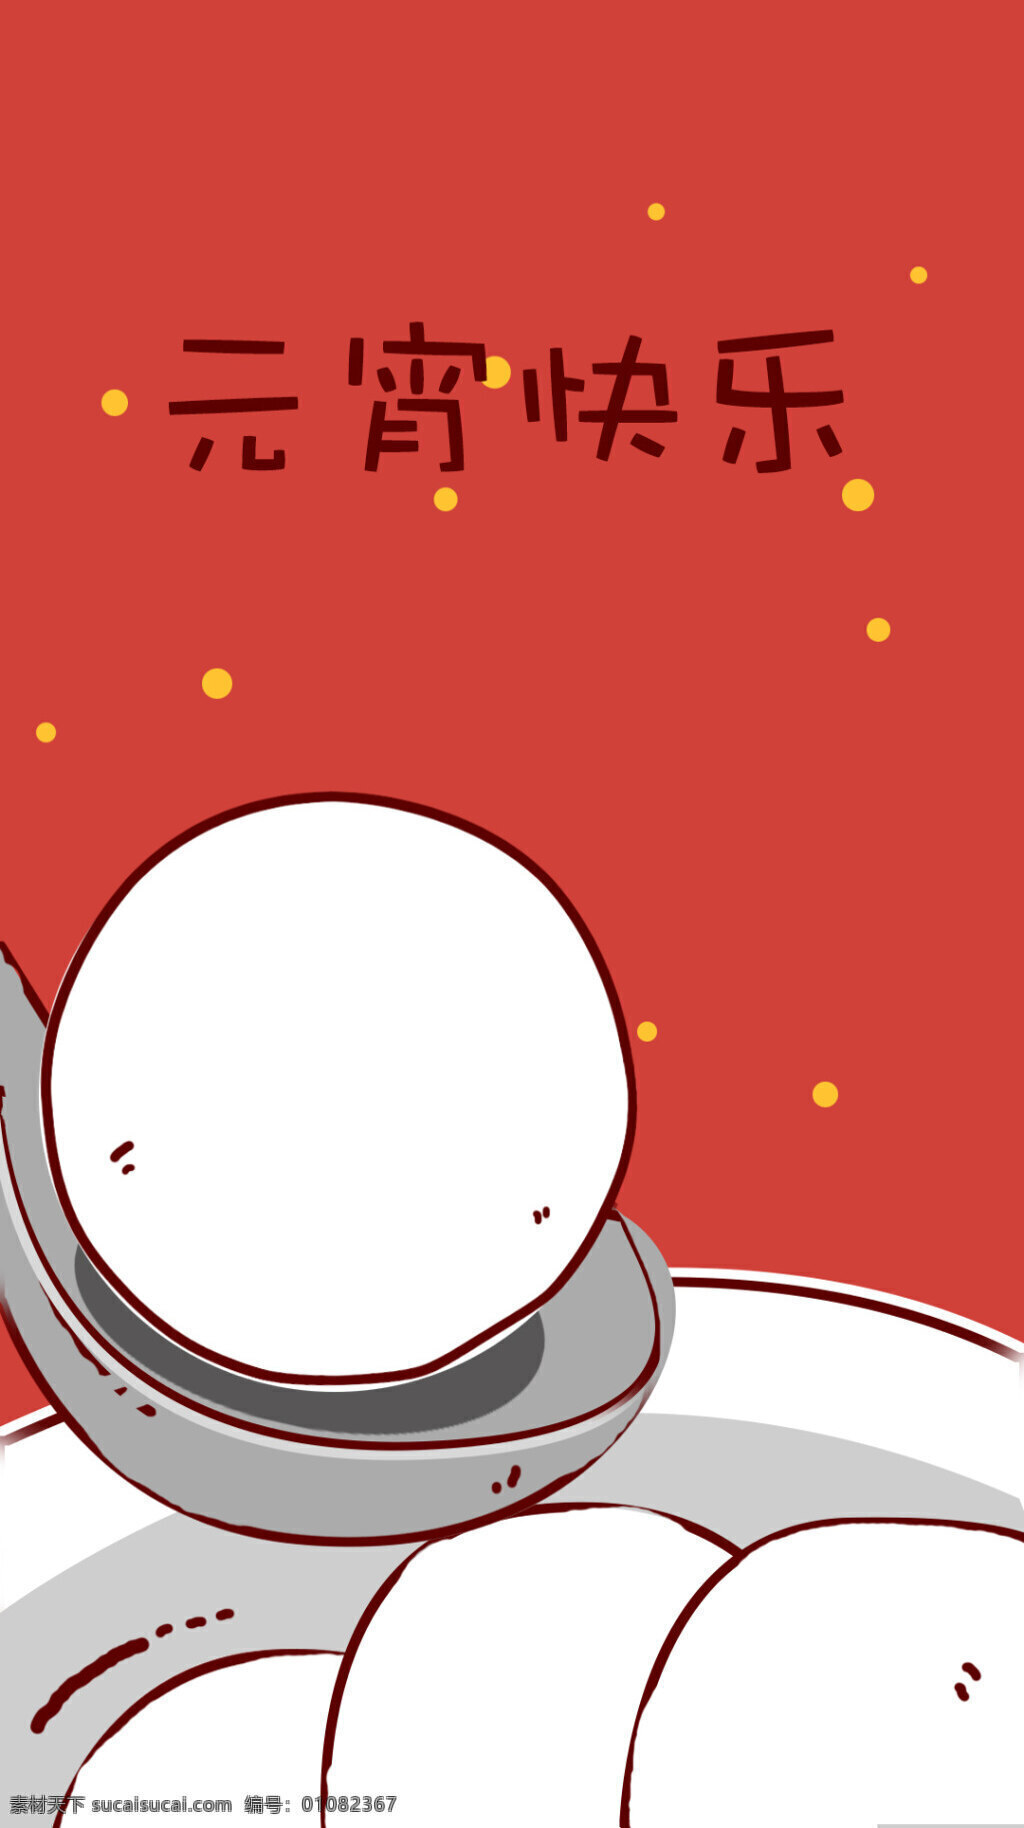 元宵节 吃 汤圆 海报 背景 卡通元素 吃汤圆 分层 使用 红色背景 手写 字体 元宵 快乐